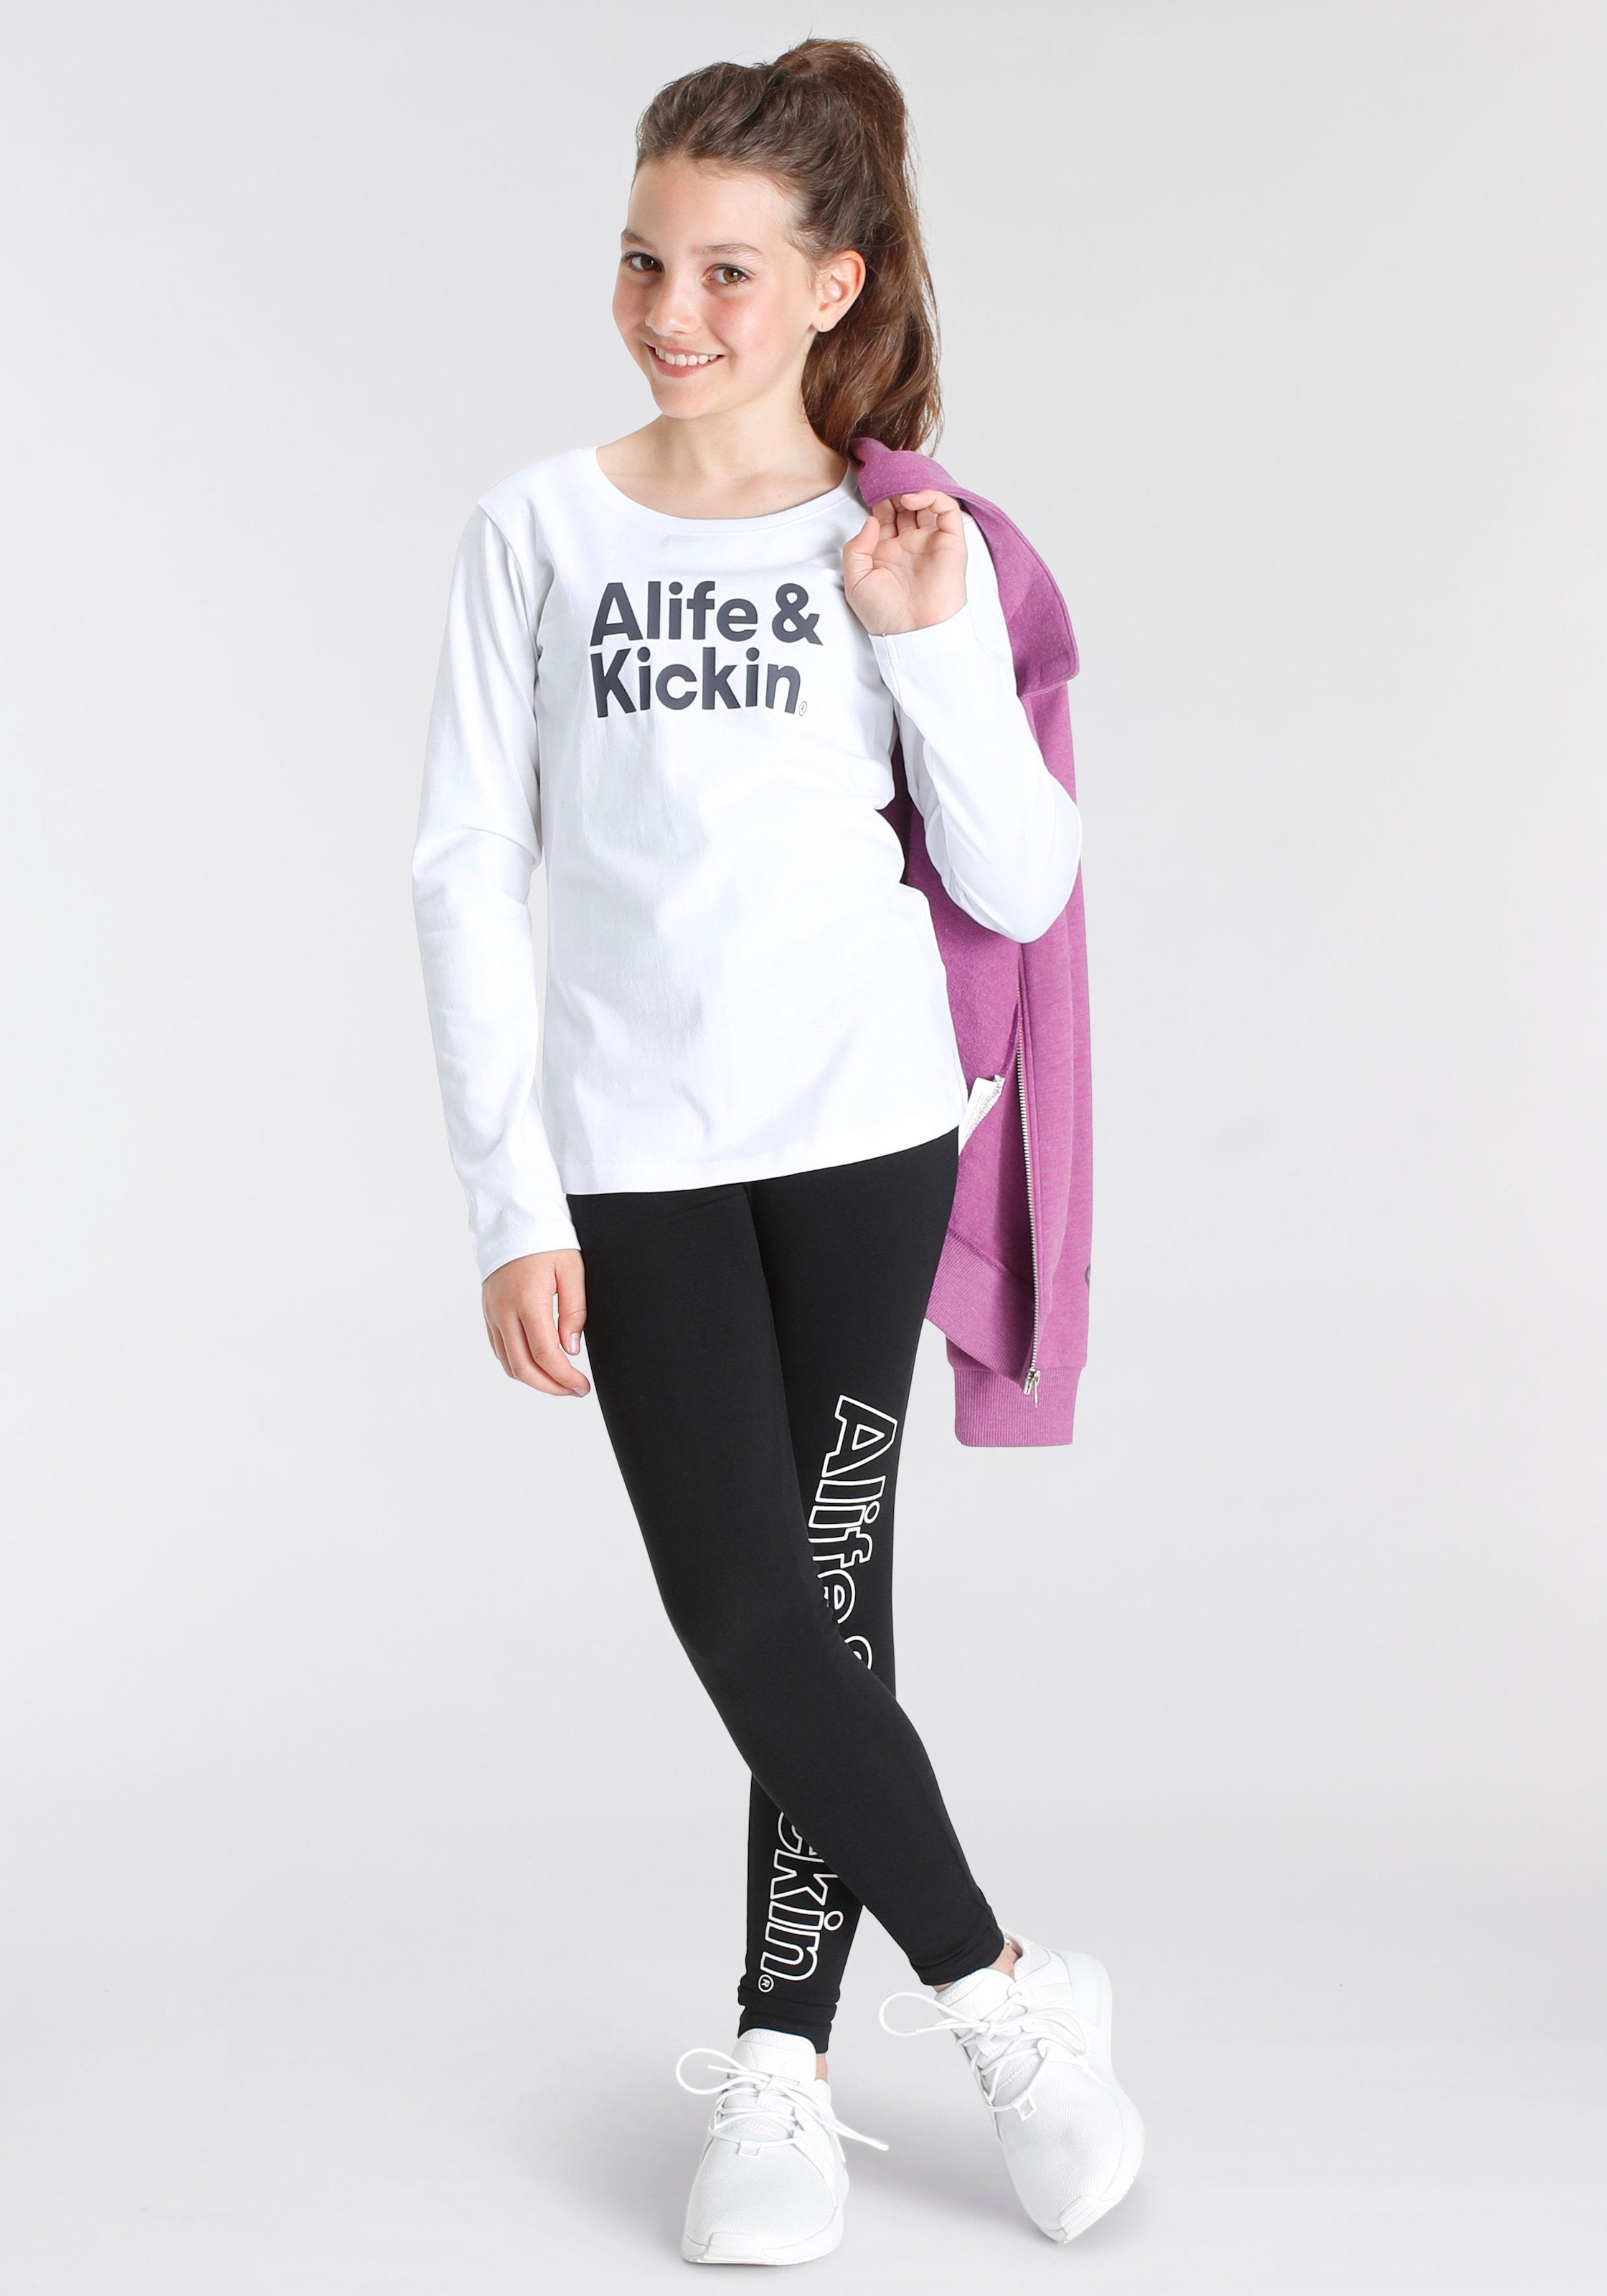 Alife & & | NEUE Alife Leggings MARKE! Druck«, OTTO »mit Kickin Logo für Kids. Kickin